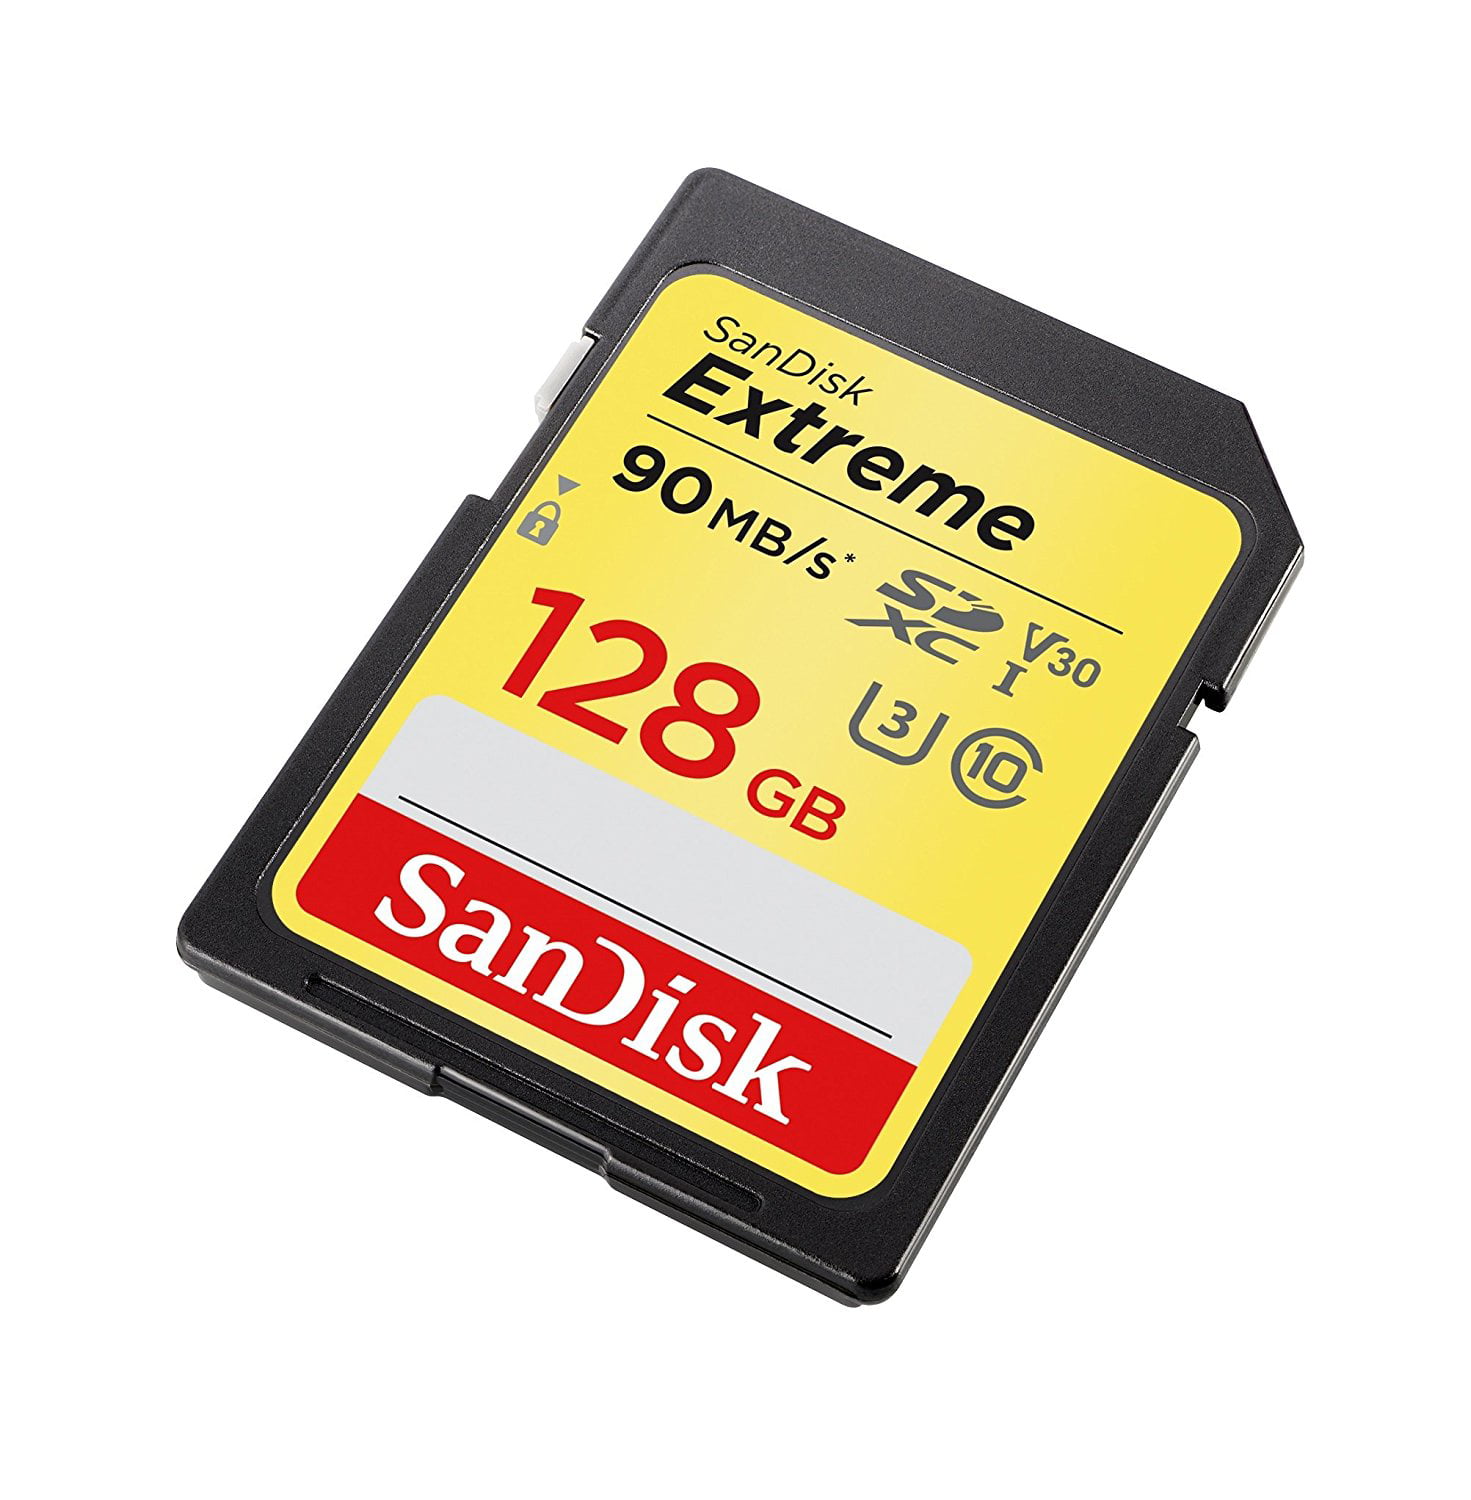 SanDisk 32GB Extreme SDHC UHS-I Memory Card - 90MB/s, C10, U3, V30, 4K UHD,  SD Card - SDSDXVE-032G-GNCIN 